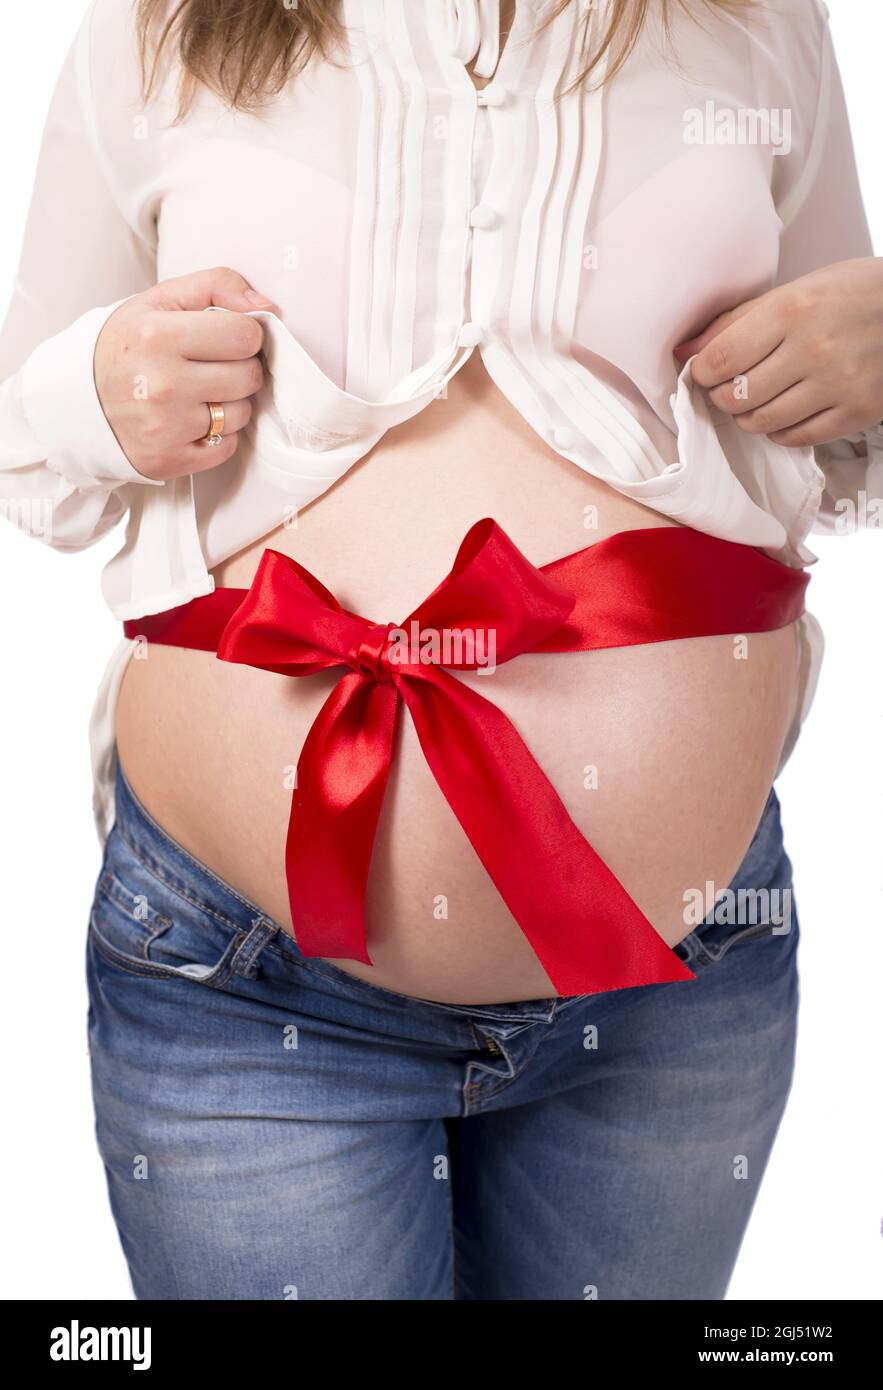 ruban rouge attaché autour du ventre d'une femme enceinte sur fond blanc  Photo Stock - Alamy